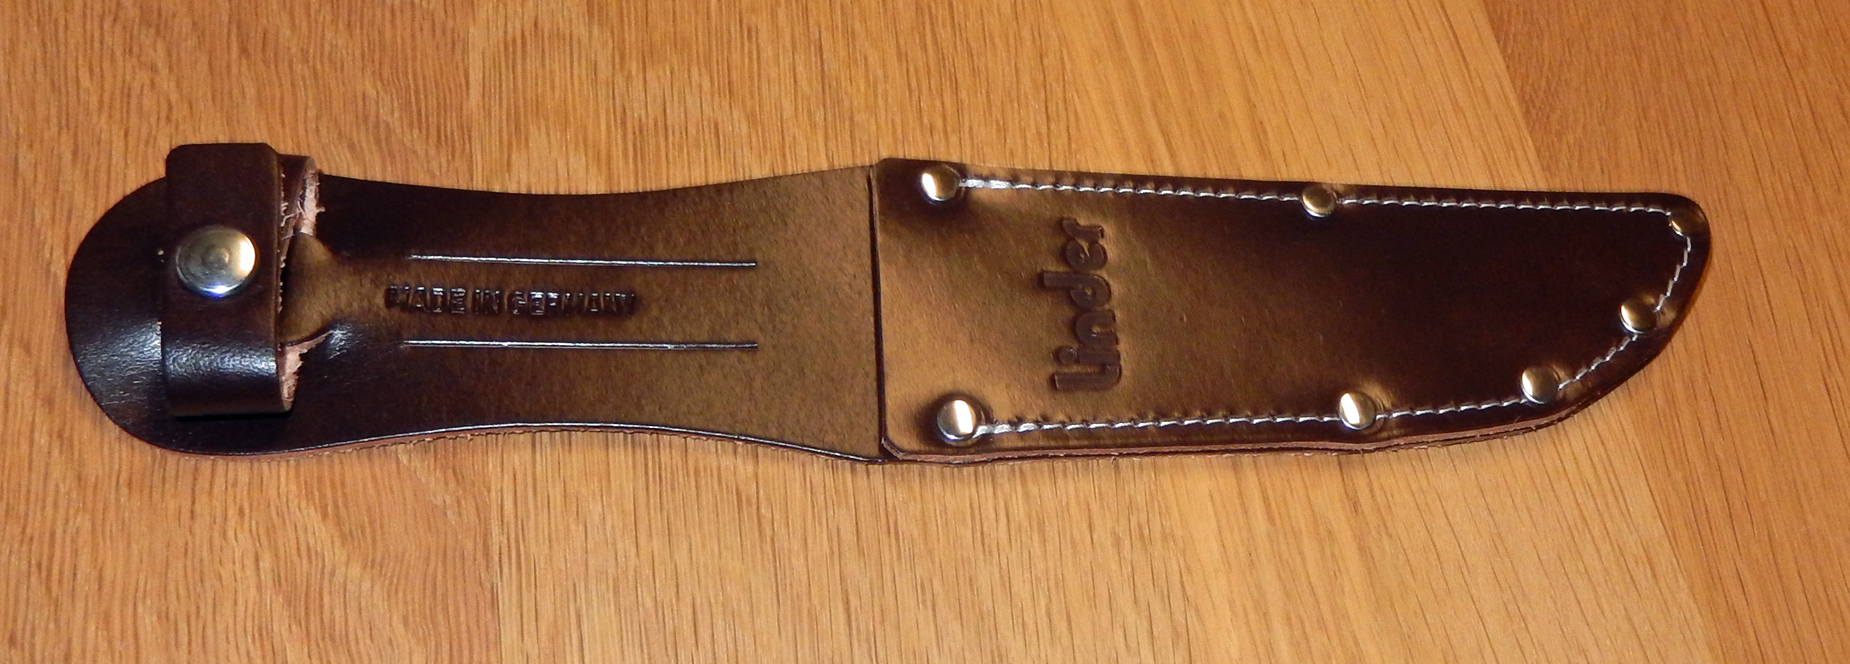 MESSERSCHEIDE für Solingen Linder Fahrtenmesser mit Klingenlänge 13 cm. bei ISS